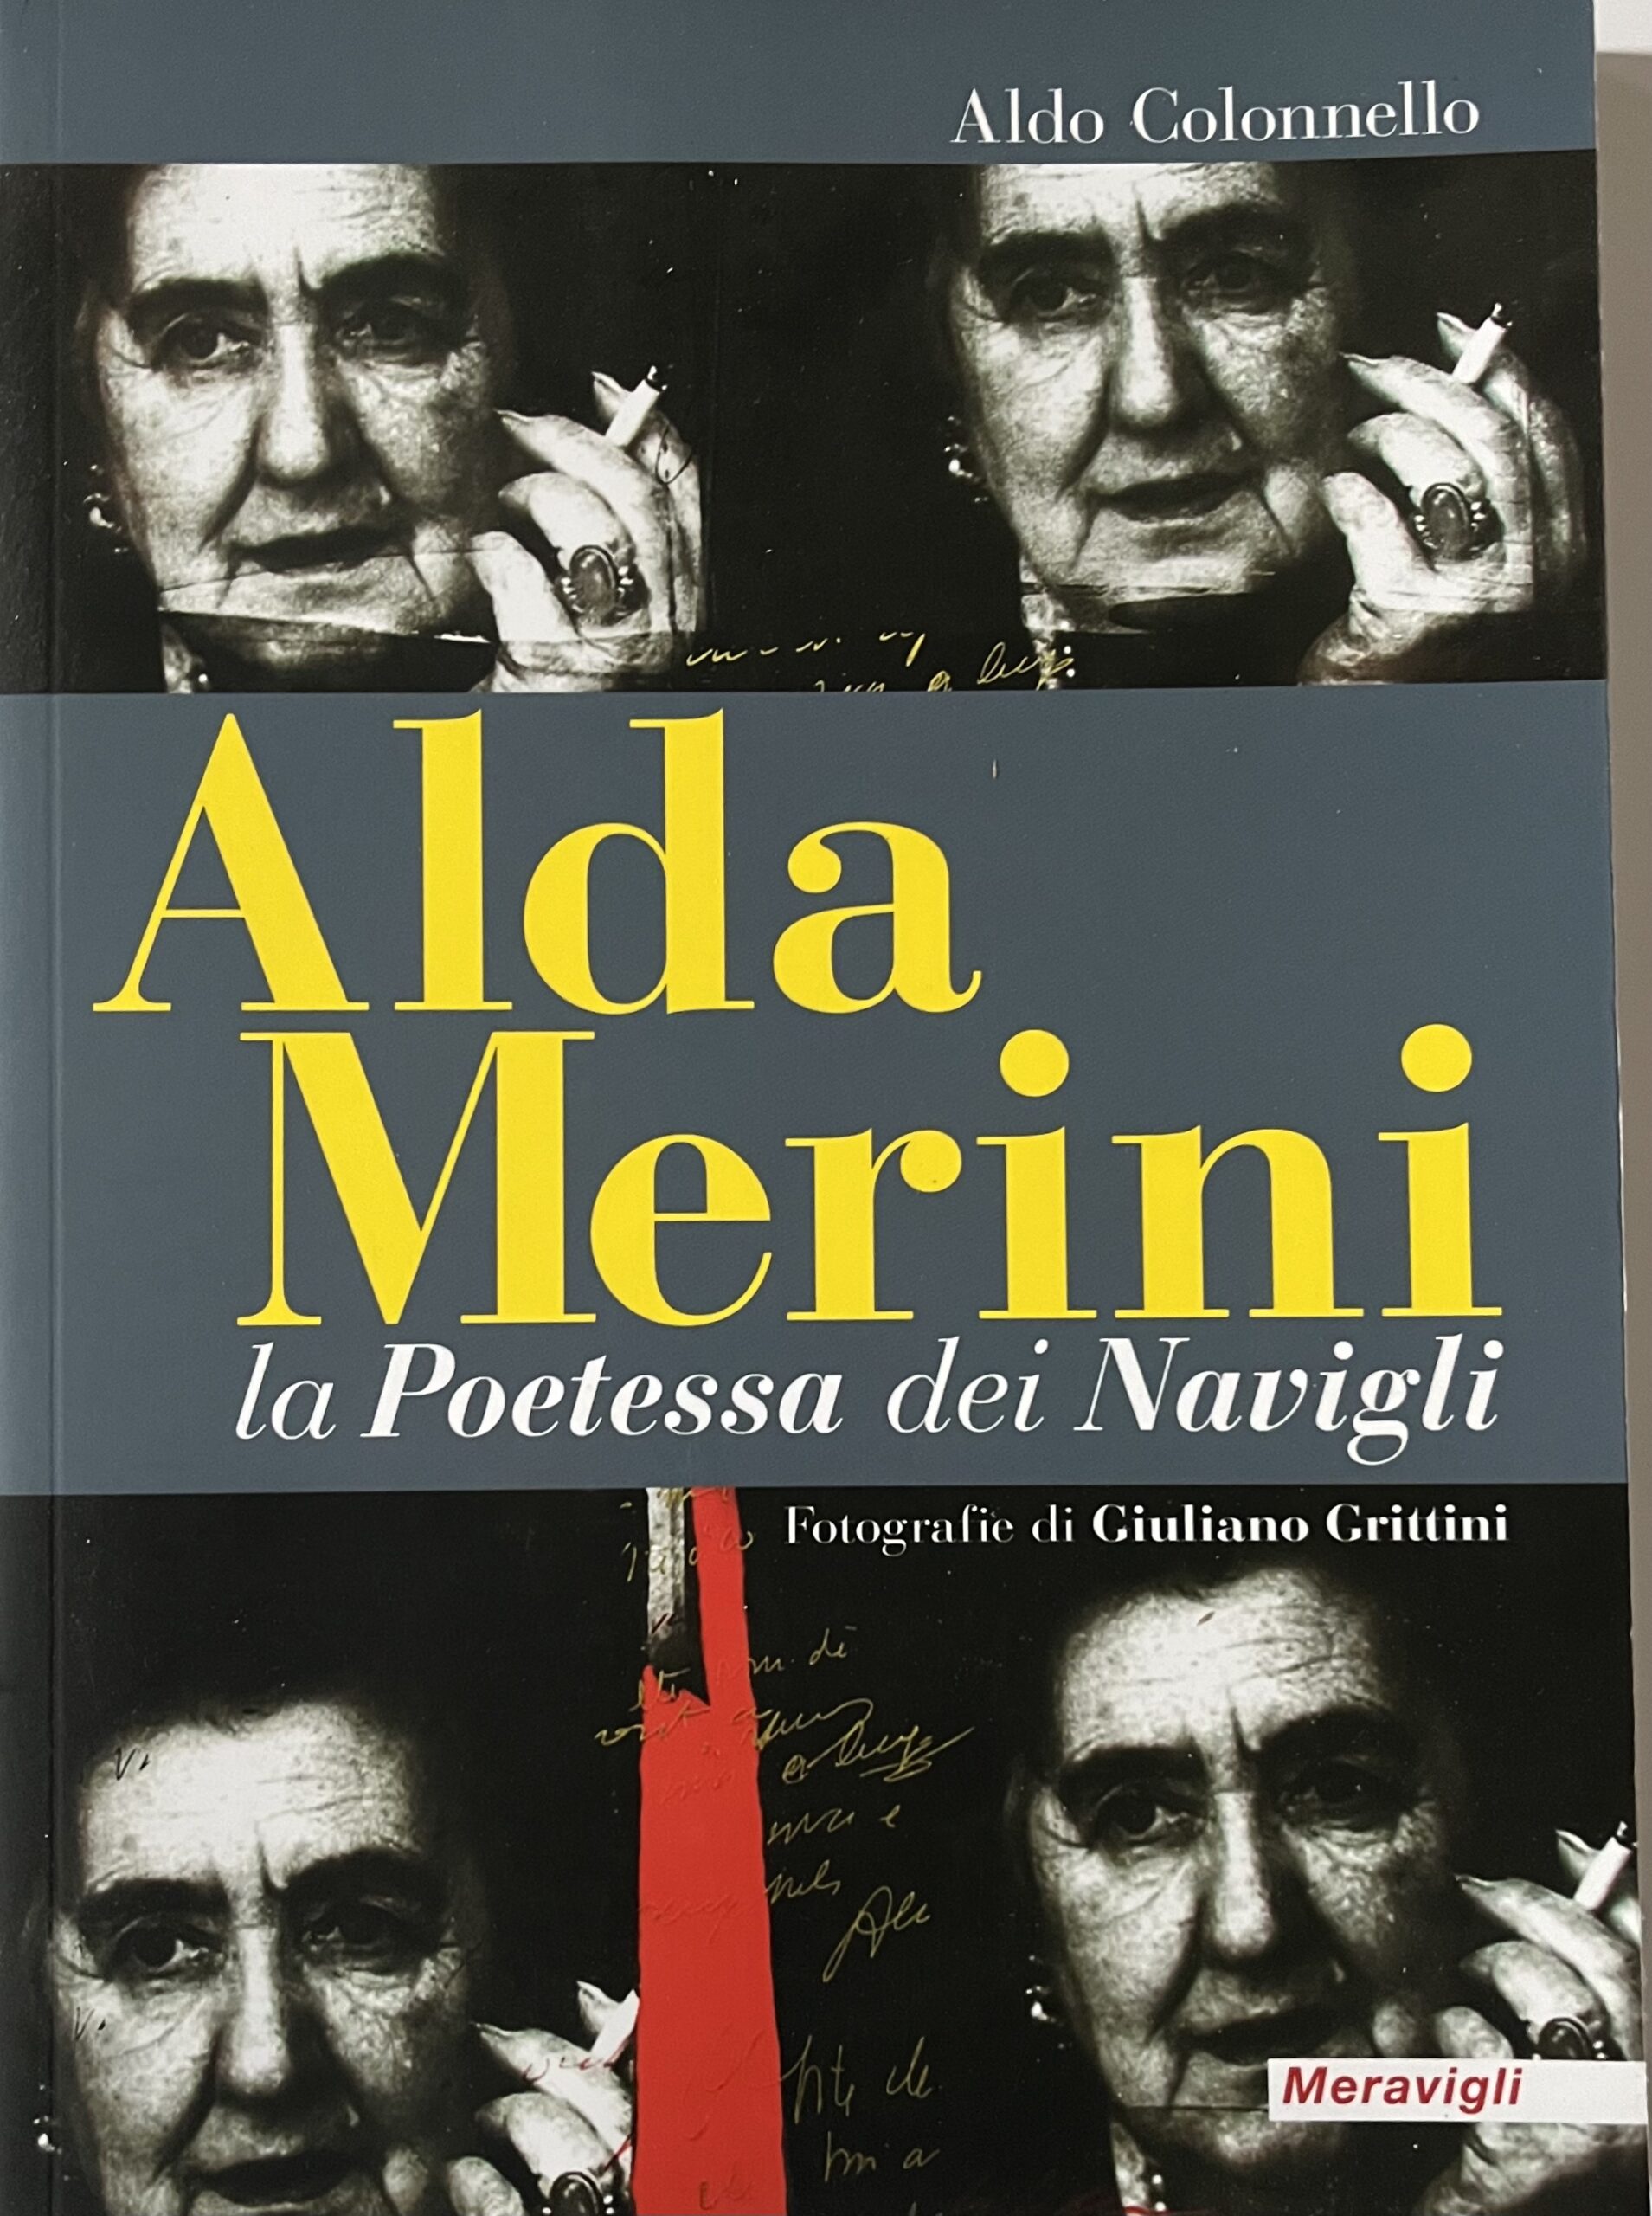 La Poetessa dei Navigli Alda Merini